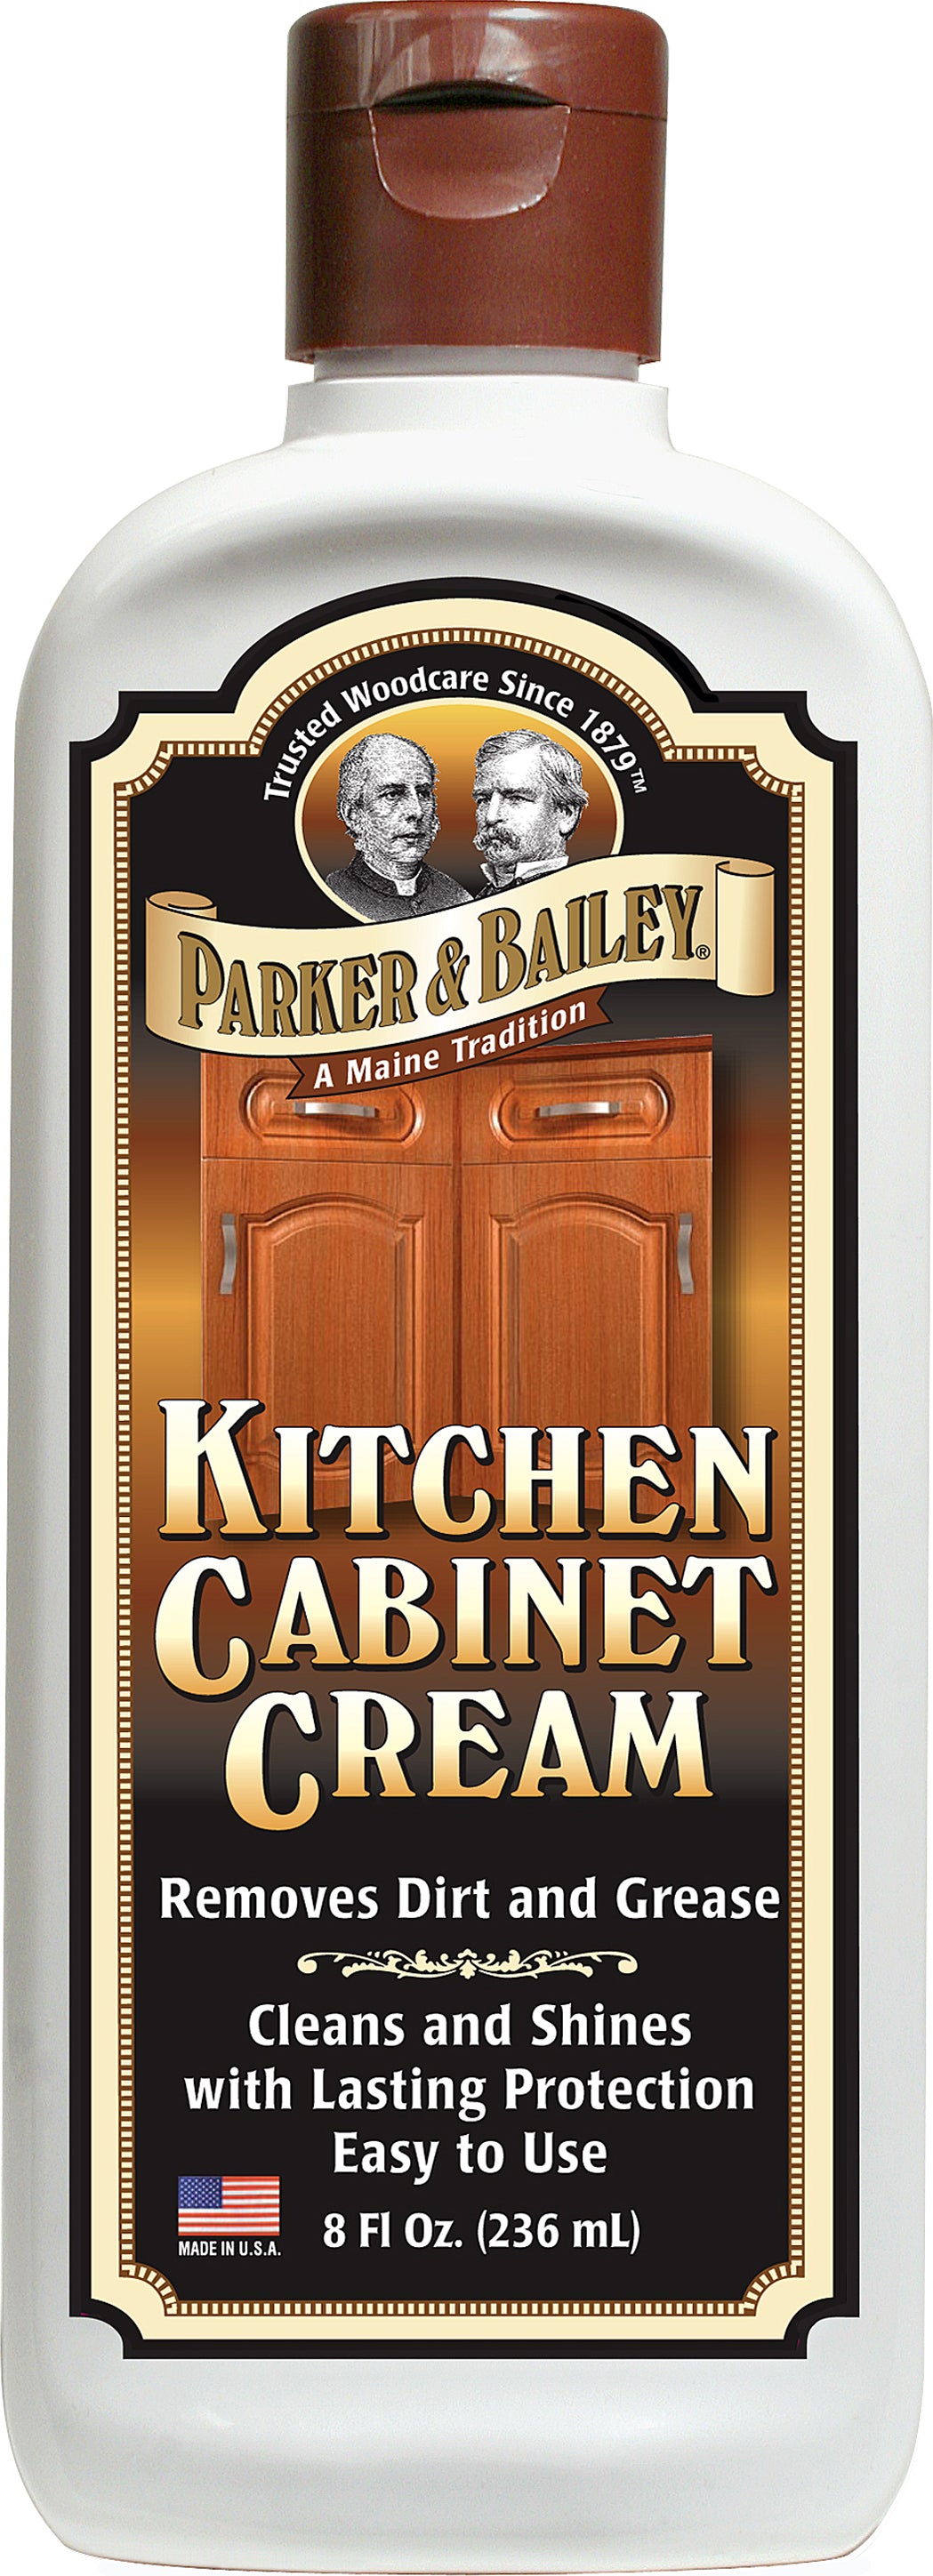 Parker & Bailey Kitchen Cabinet Cream - 236ml